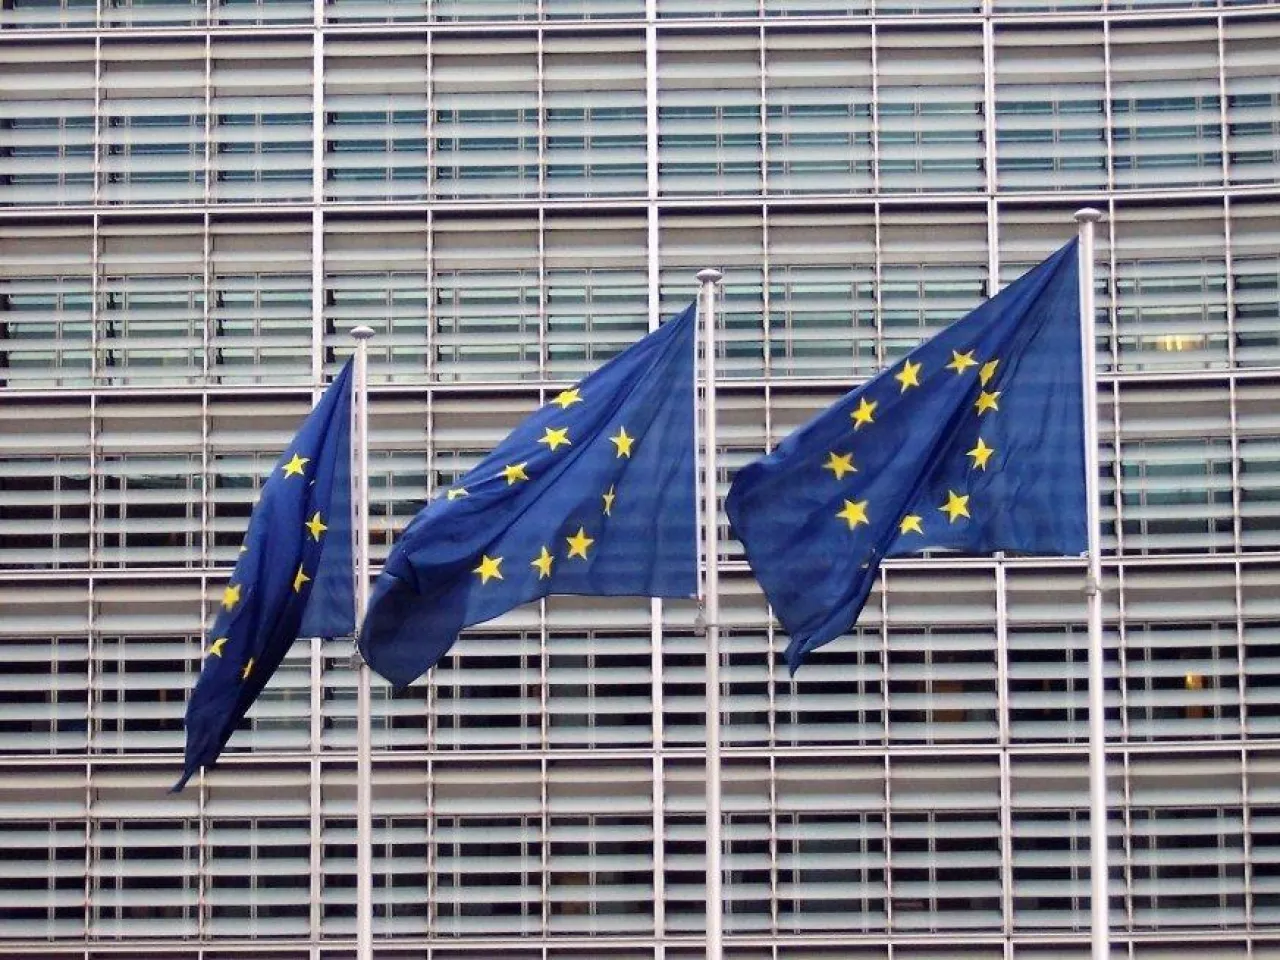 Unijne rozporządzenie ujednolica kwestie bezpieczeństwa produktów na terenie Unii Europejskiej.